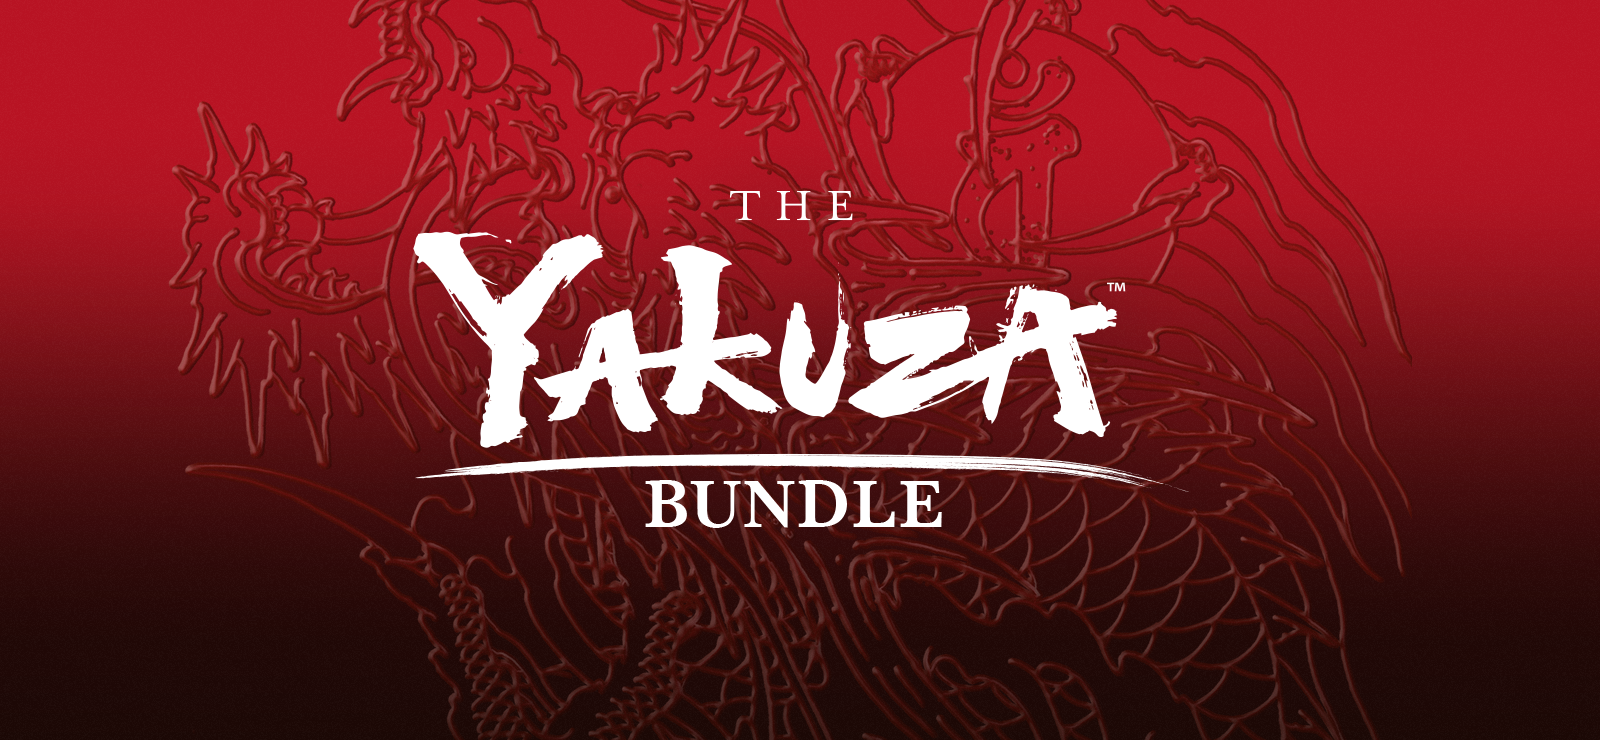 The Yakuza Bundle